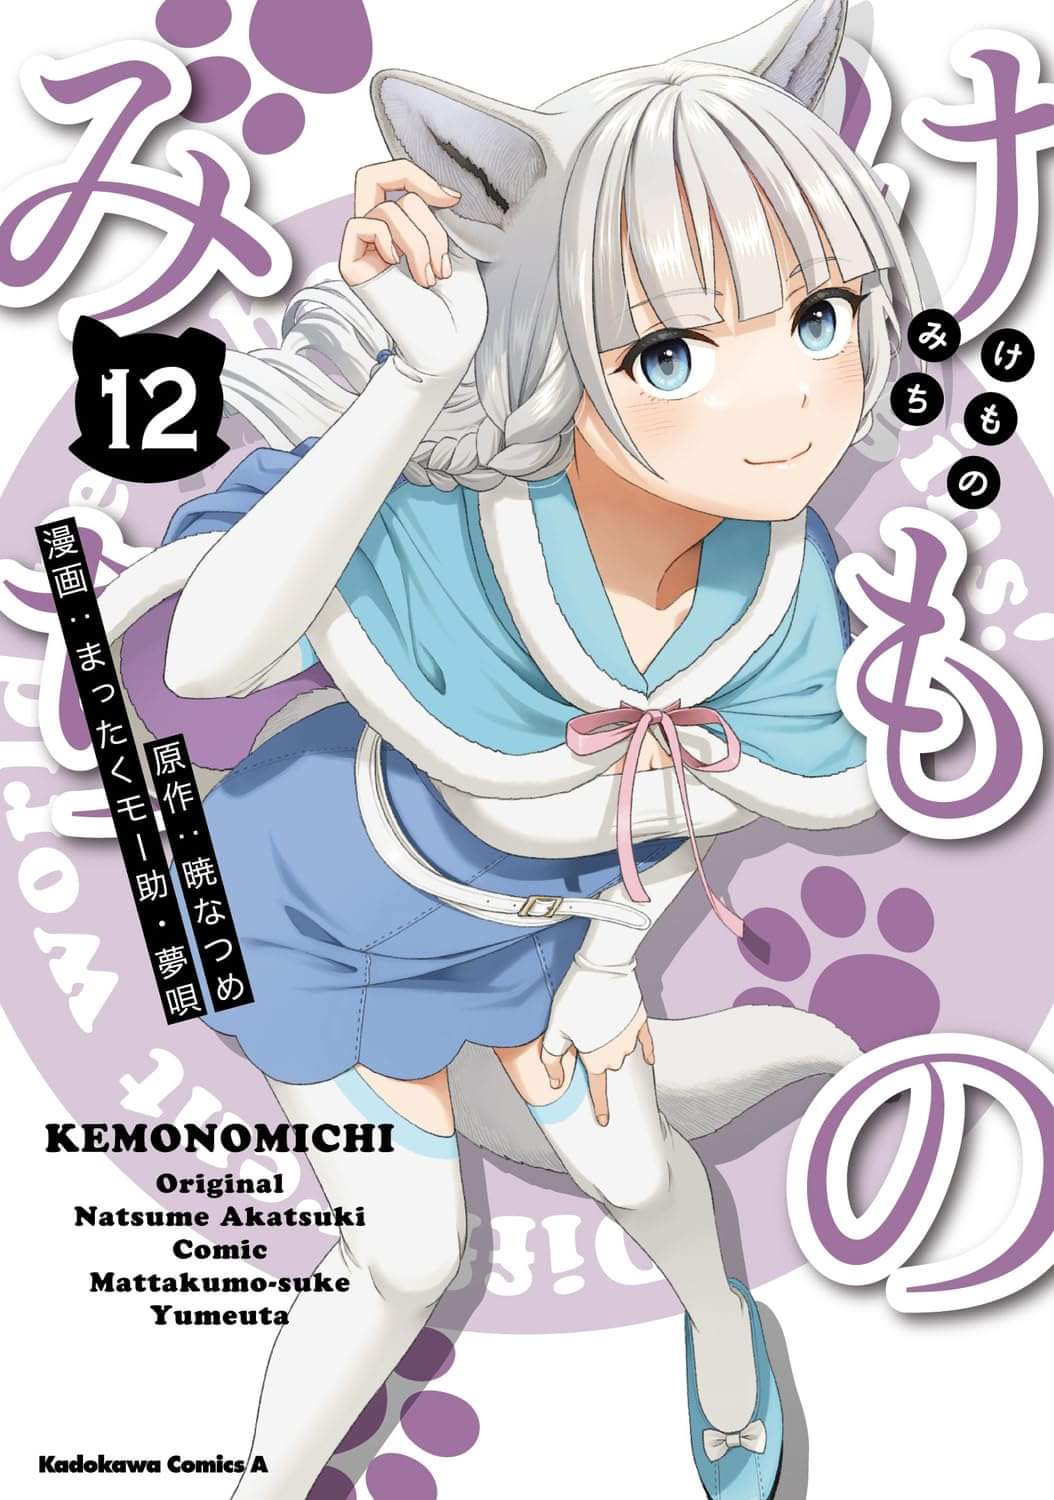 Read Kemono Michi (Natsume Akatsuki) Chapter 63: (Chapter 67) on  Mangakakalot